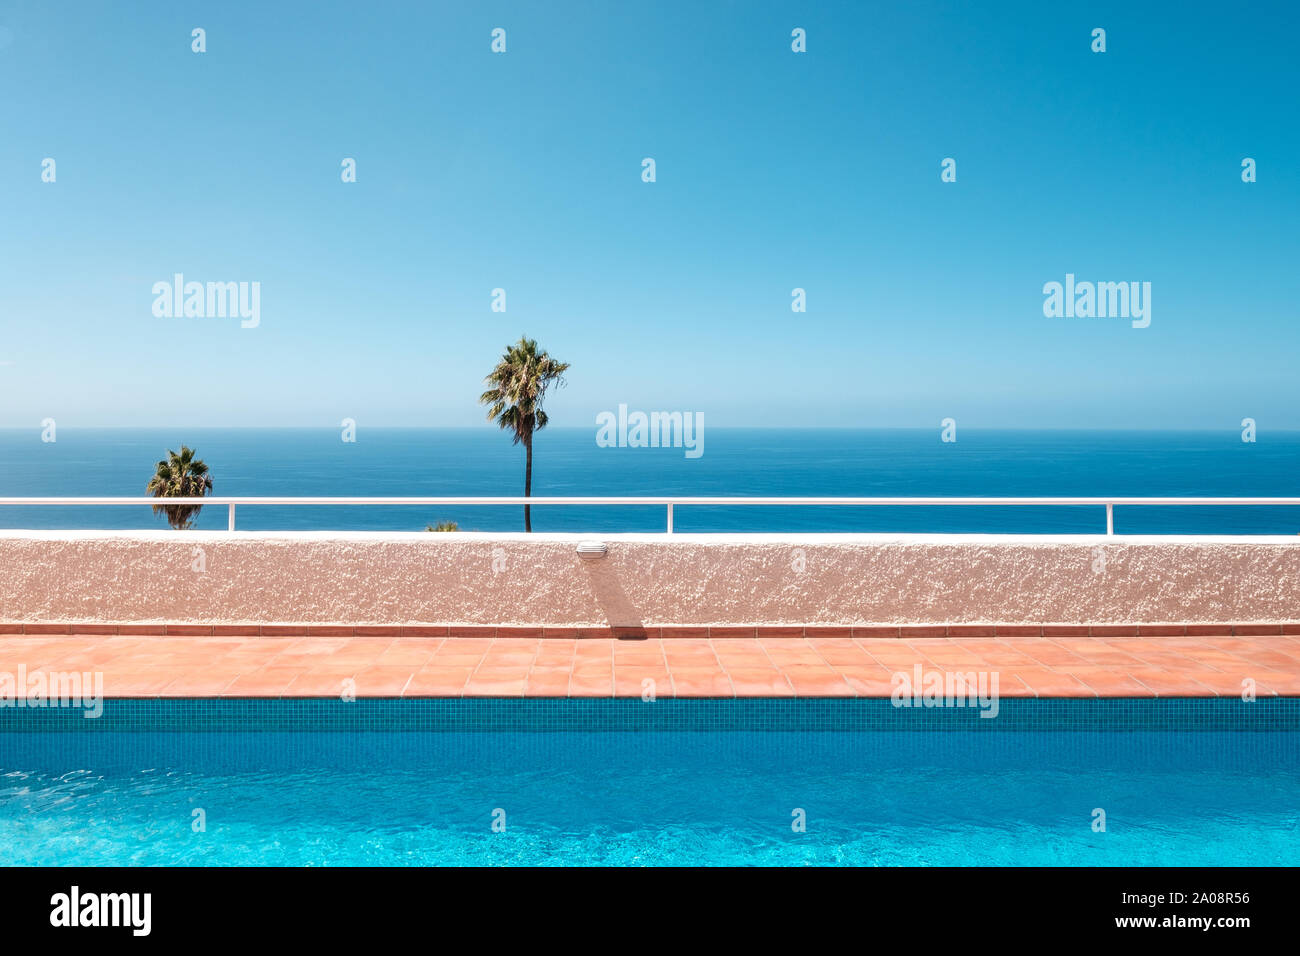 Piscine extérieure avec vue sur l'océan, palmiers et ciel bleu clair Banque D'Images